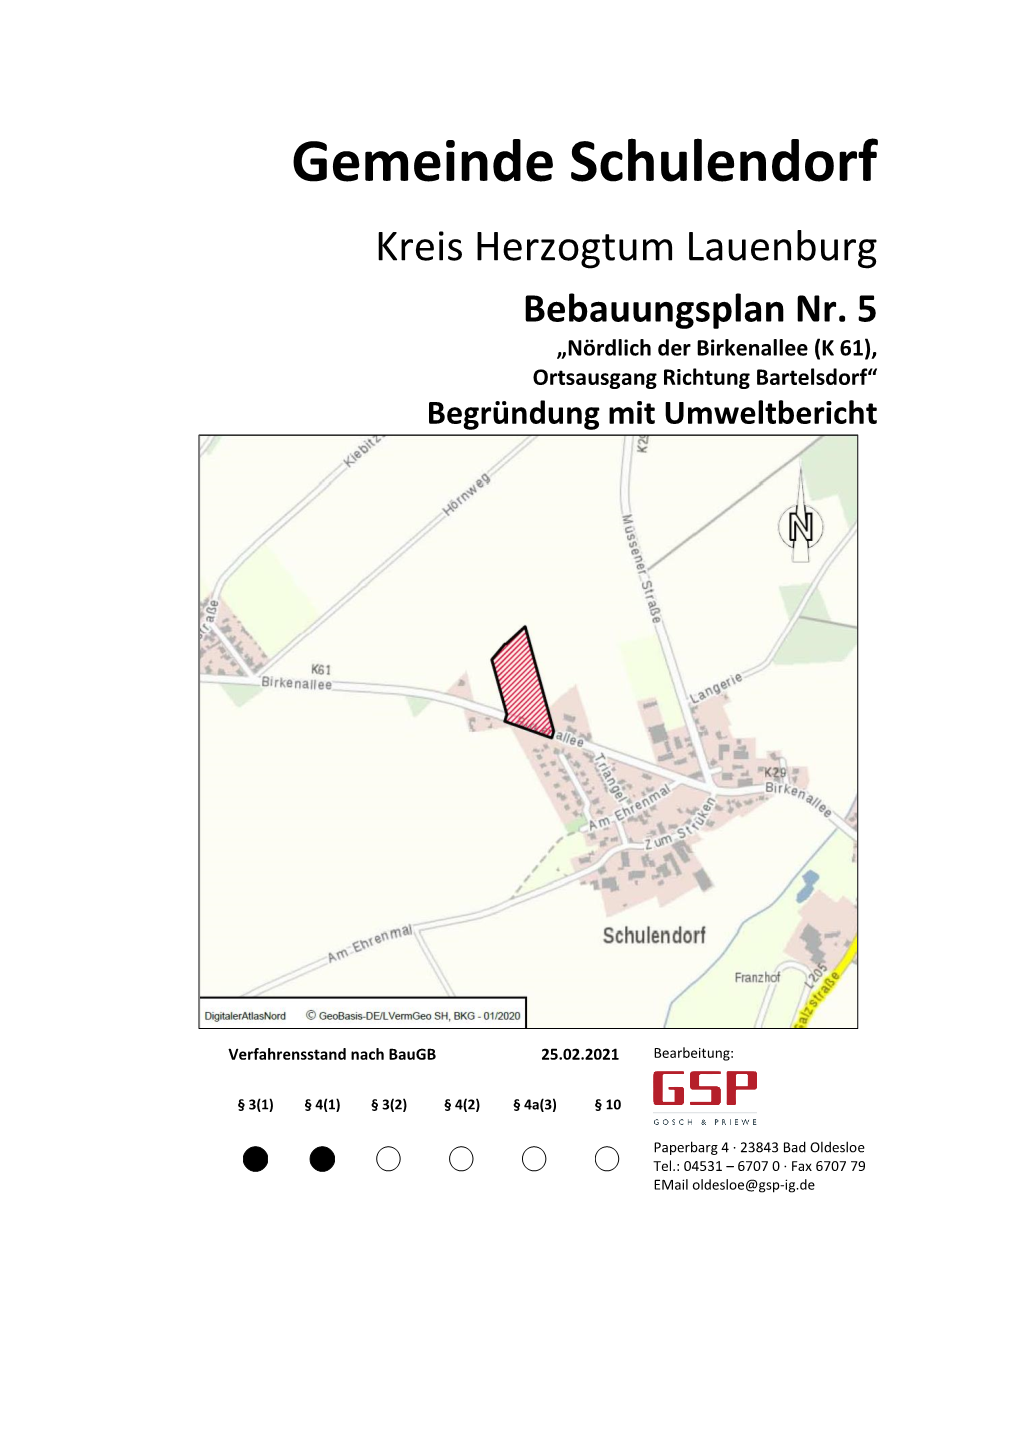 Gemeinde Schulendorf Kreis Herzogtum Lauenburg Bebauungsplan Nr